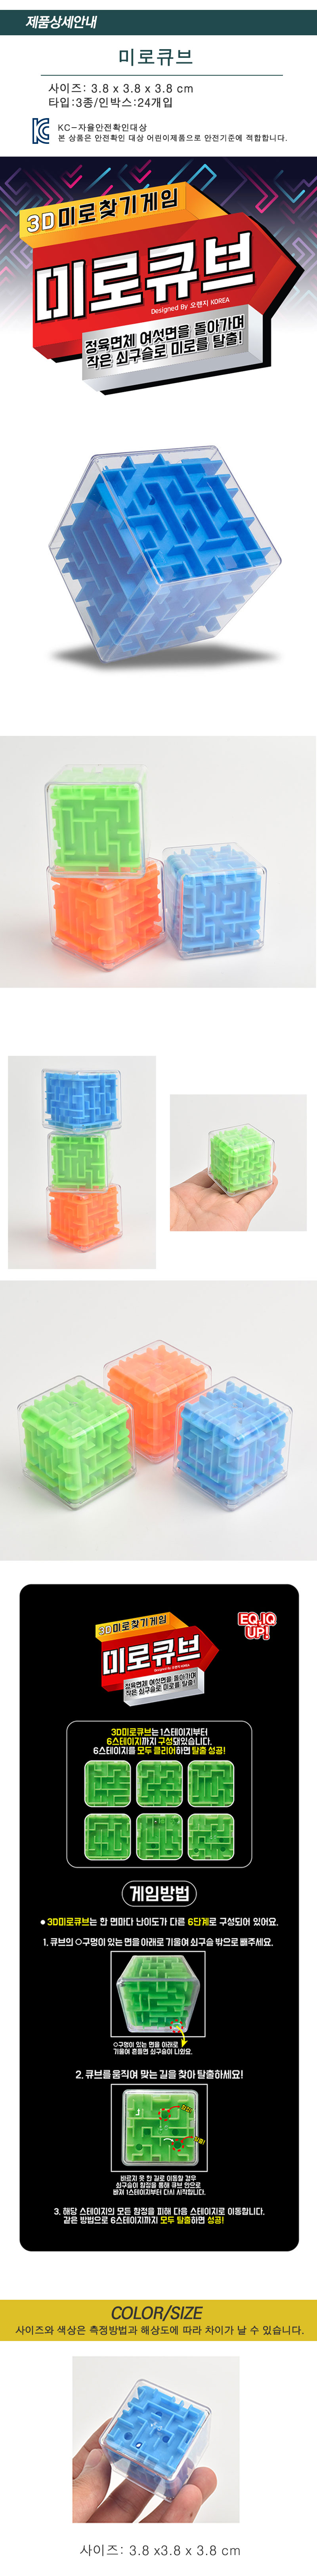 5004 3D입체미로큐브 1,000원 - 아토 키덜트/취미, 블록/퍼즐, 조각/퍼즐, 큐브 바보사랑 5004 3D입체미로큐브 1,000원 - 아토 키덜트/취미, 블록/퍼즐, 조각/퍼즐, 큐브 바보사랑